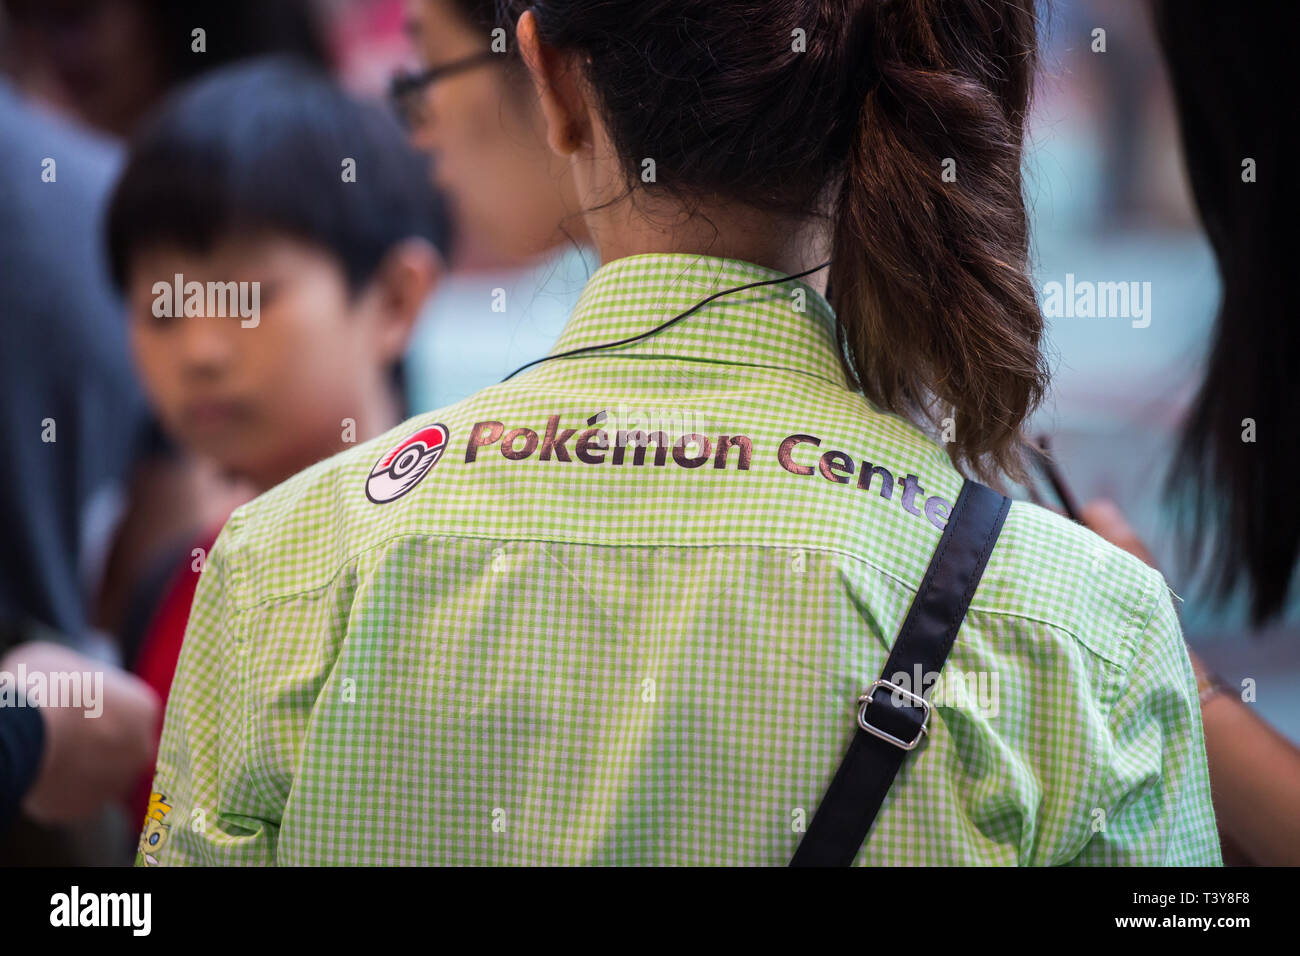 La vista posteriore di una donna del personale indossa una camicia Pokemon con colletto centrale al lavoro, Jewel Changi Airport, Singapore. Foto Stock